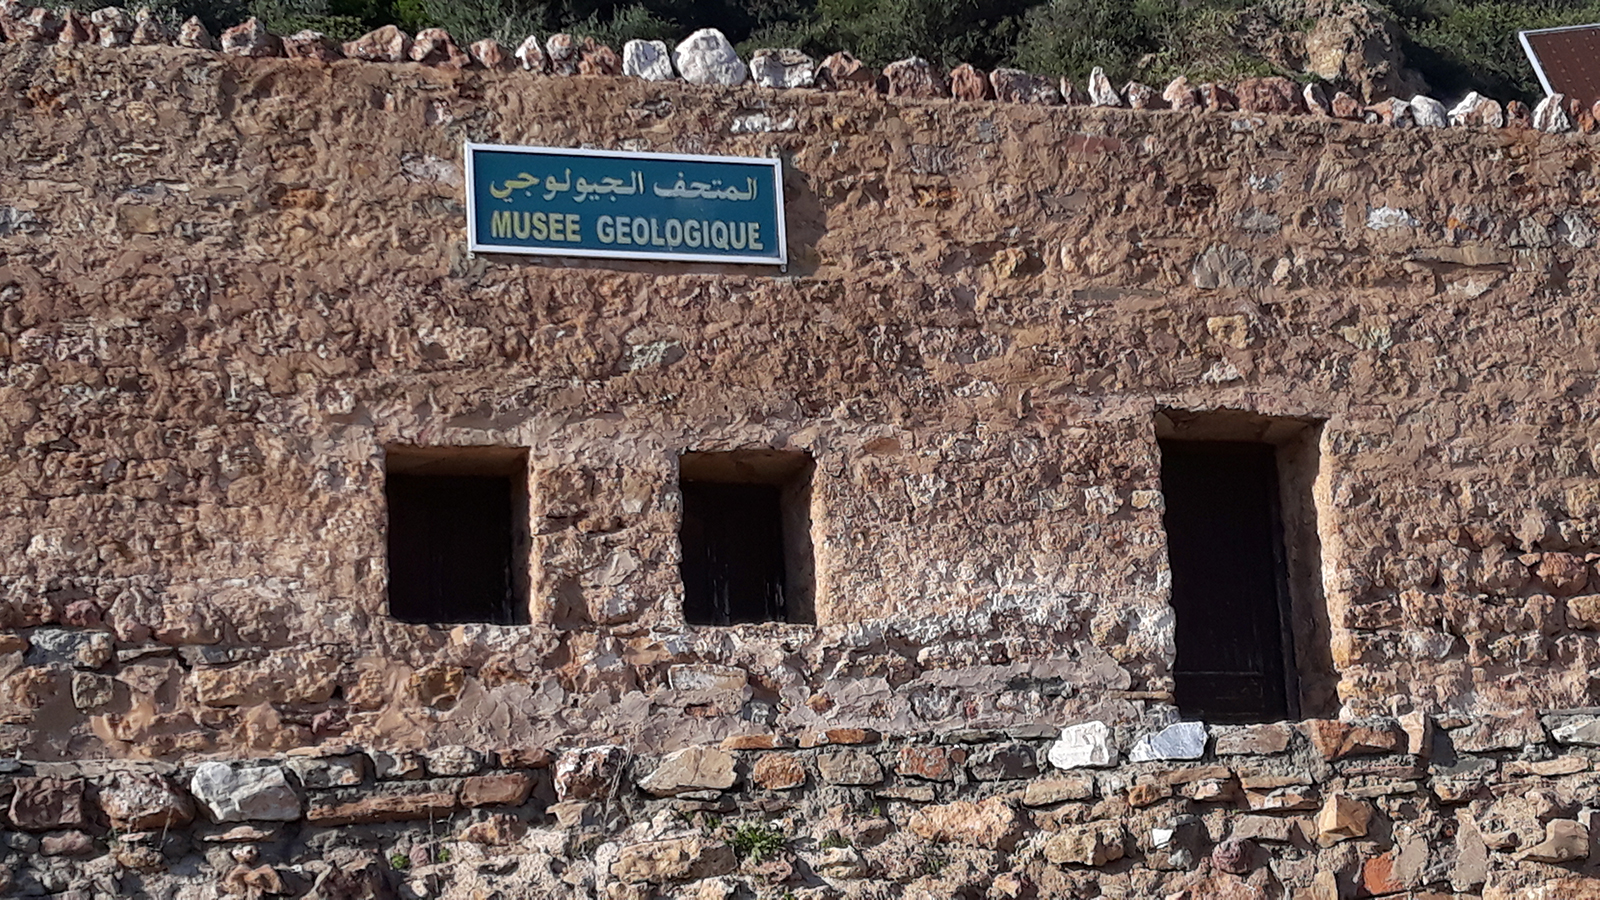 ‪المتحف الجيولوجي موصد الأبواب‬ (الجزيرة)